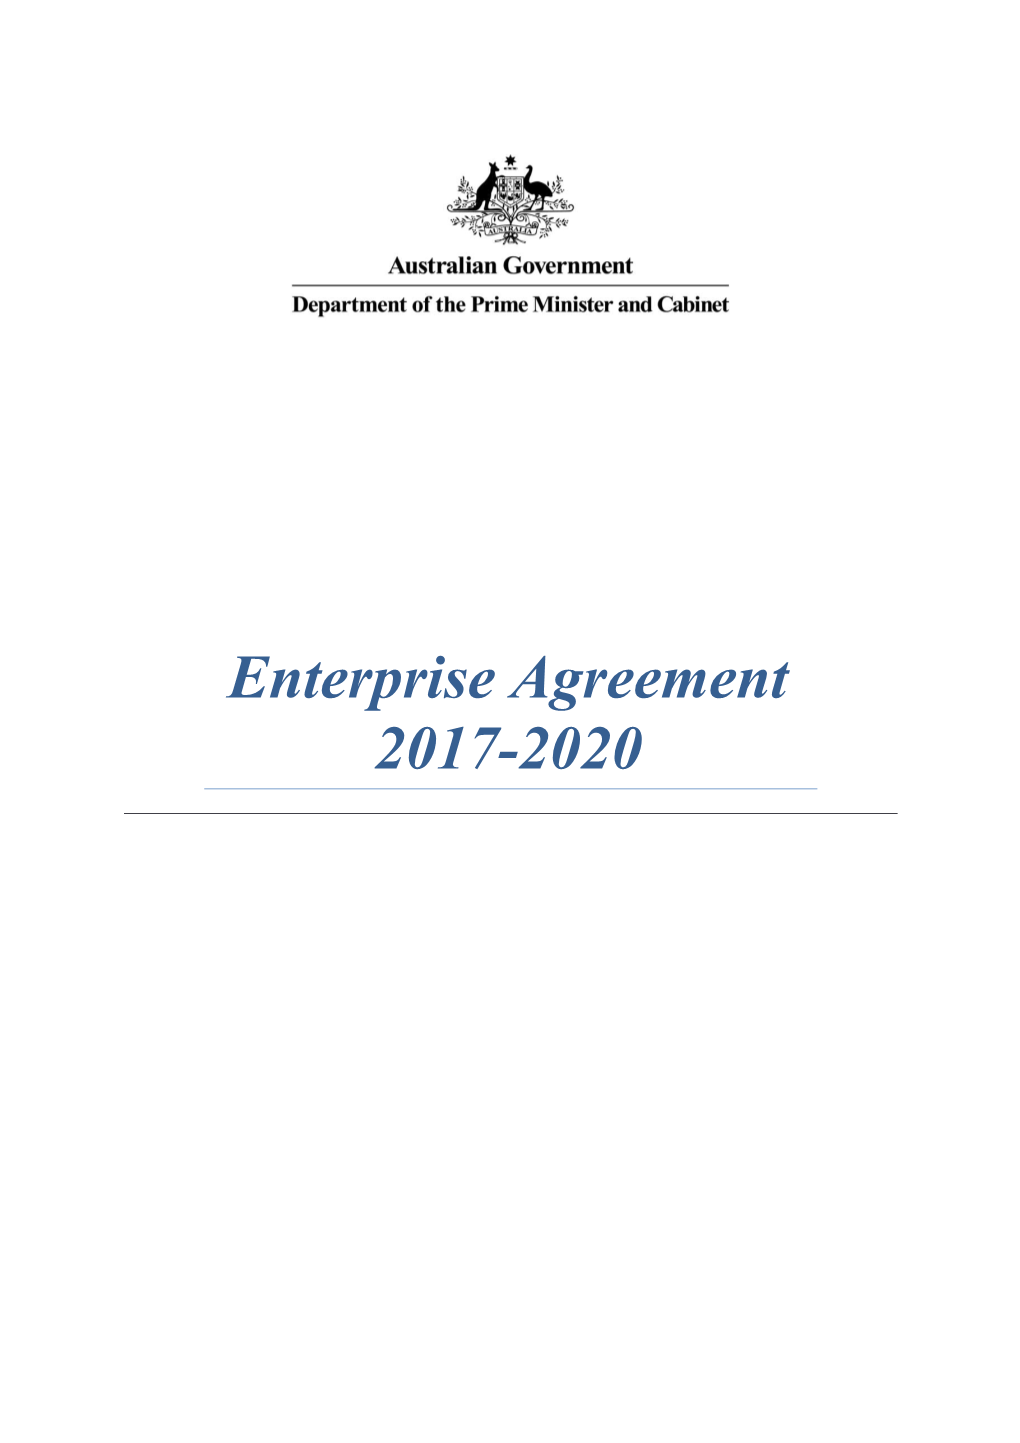 PM&C Enterprise Agreement 2017-2020